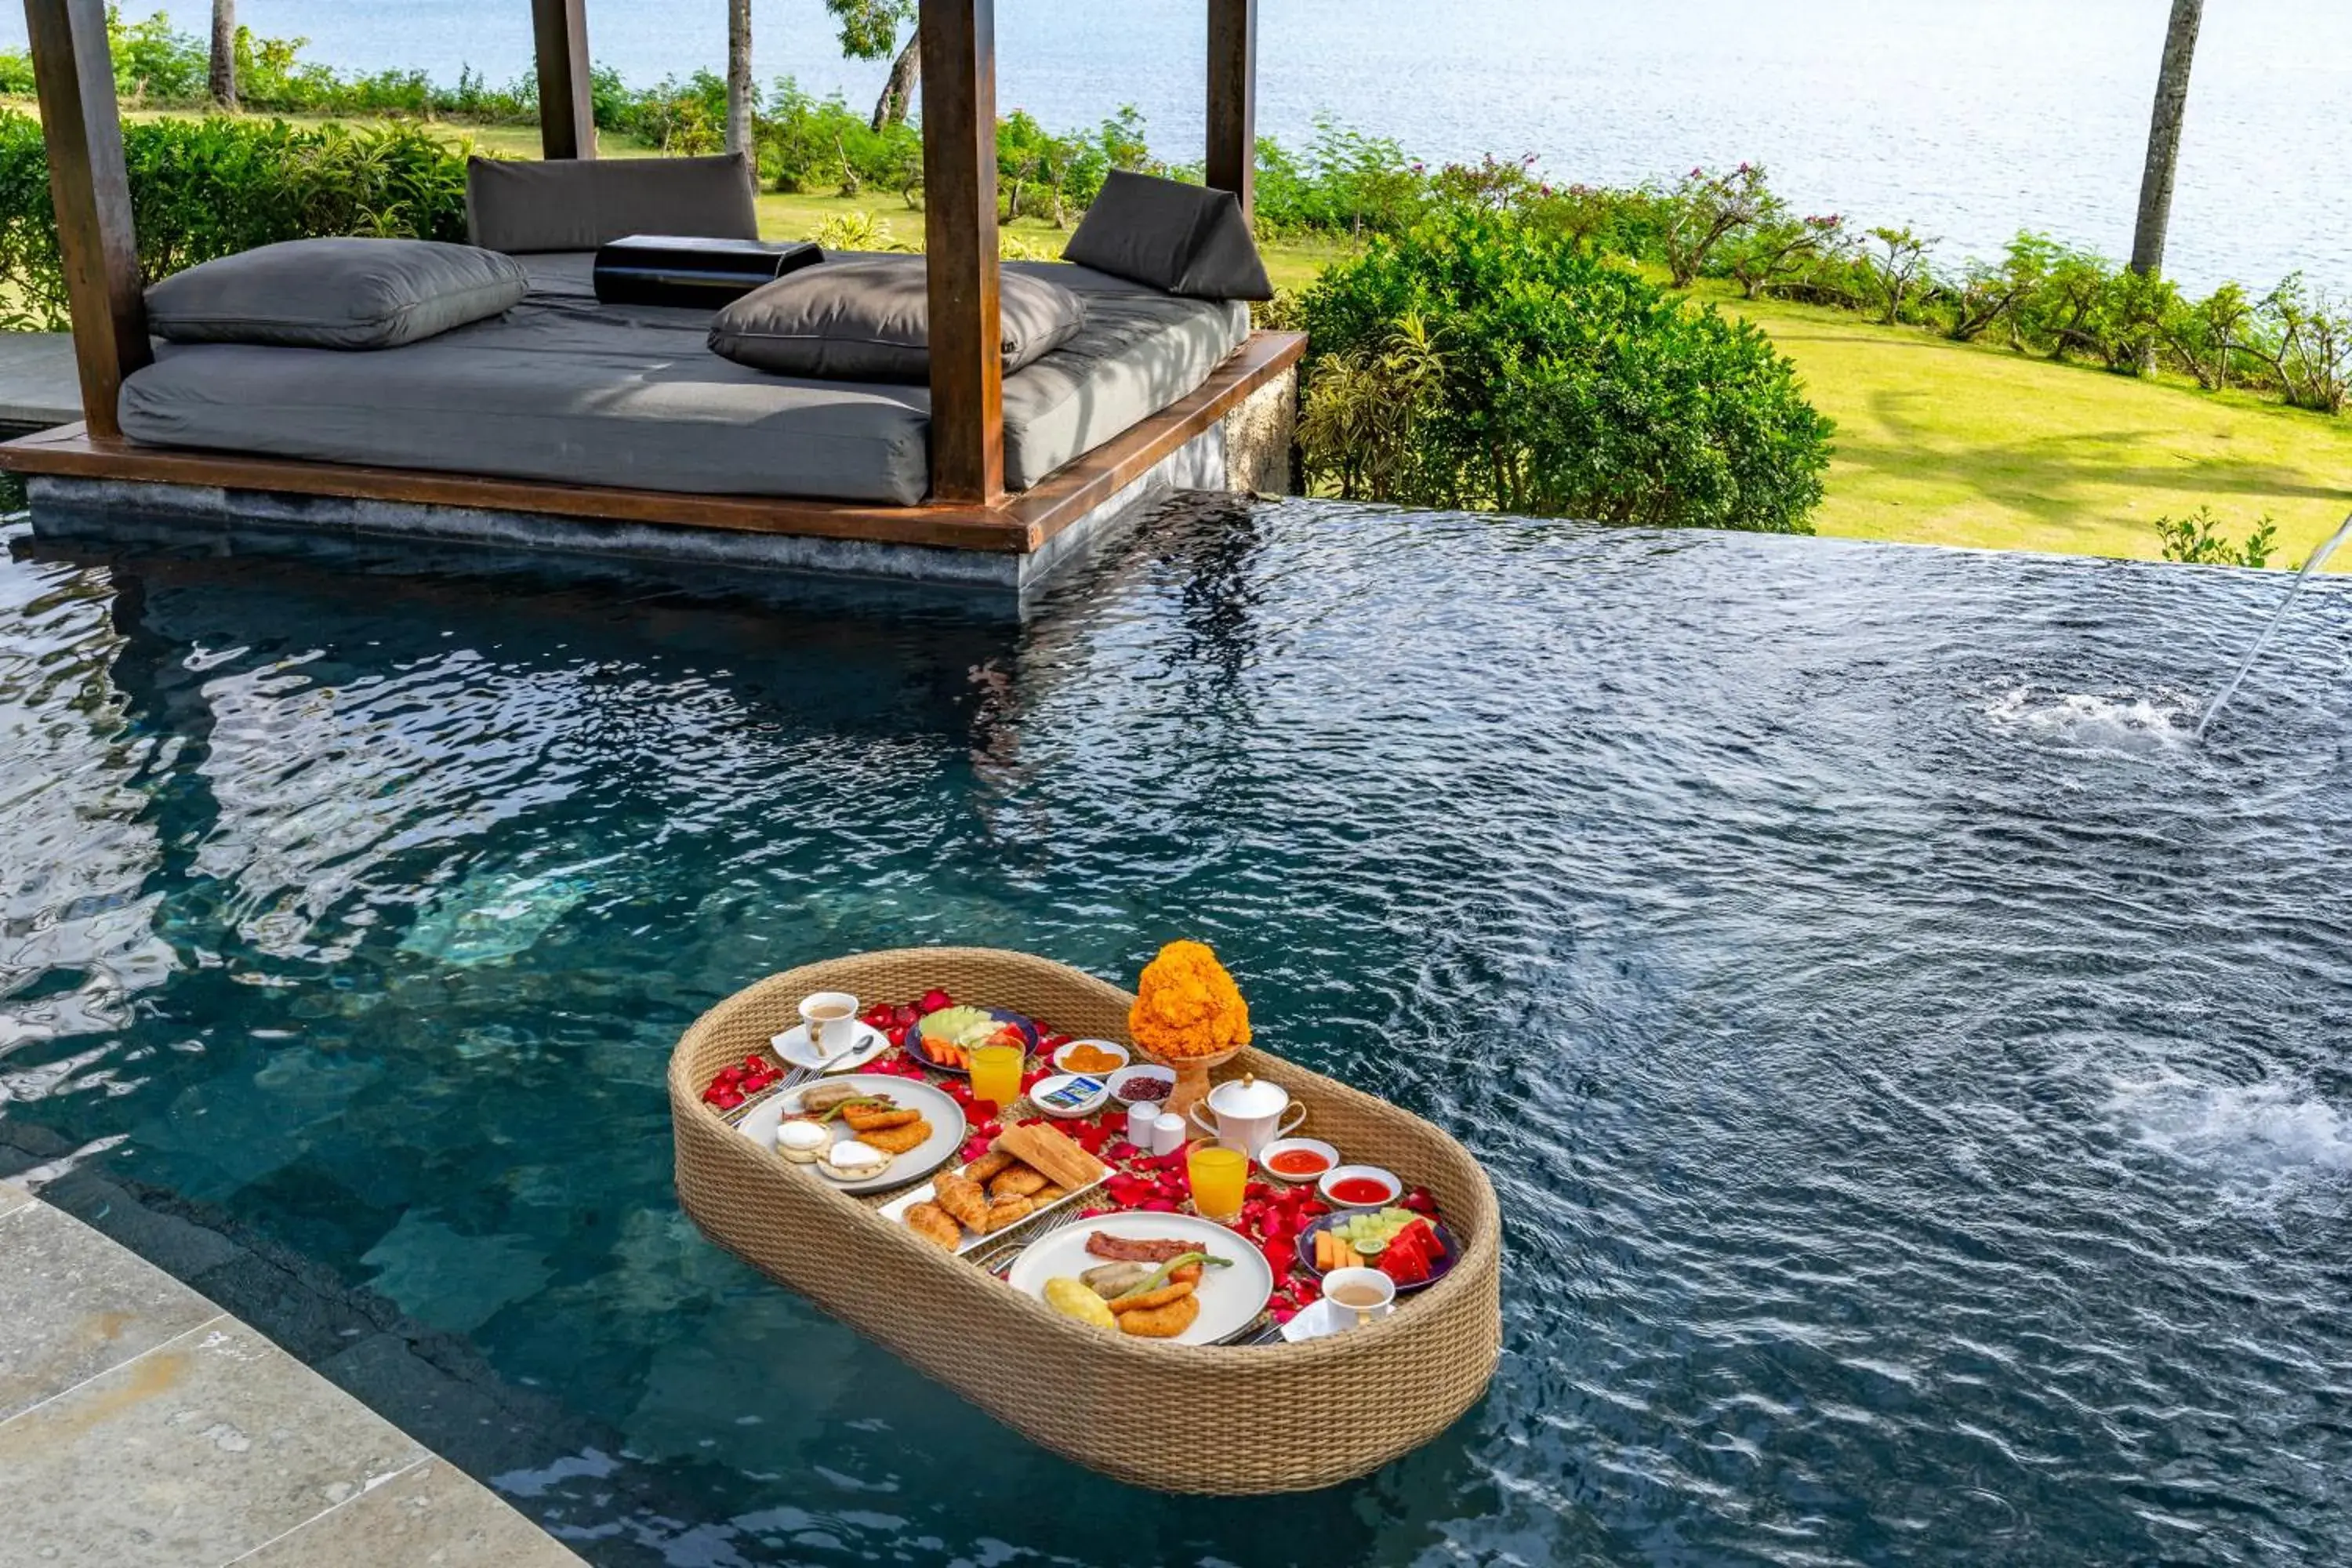 Swimming Pool in AYANA Villas Bali